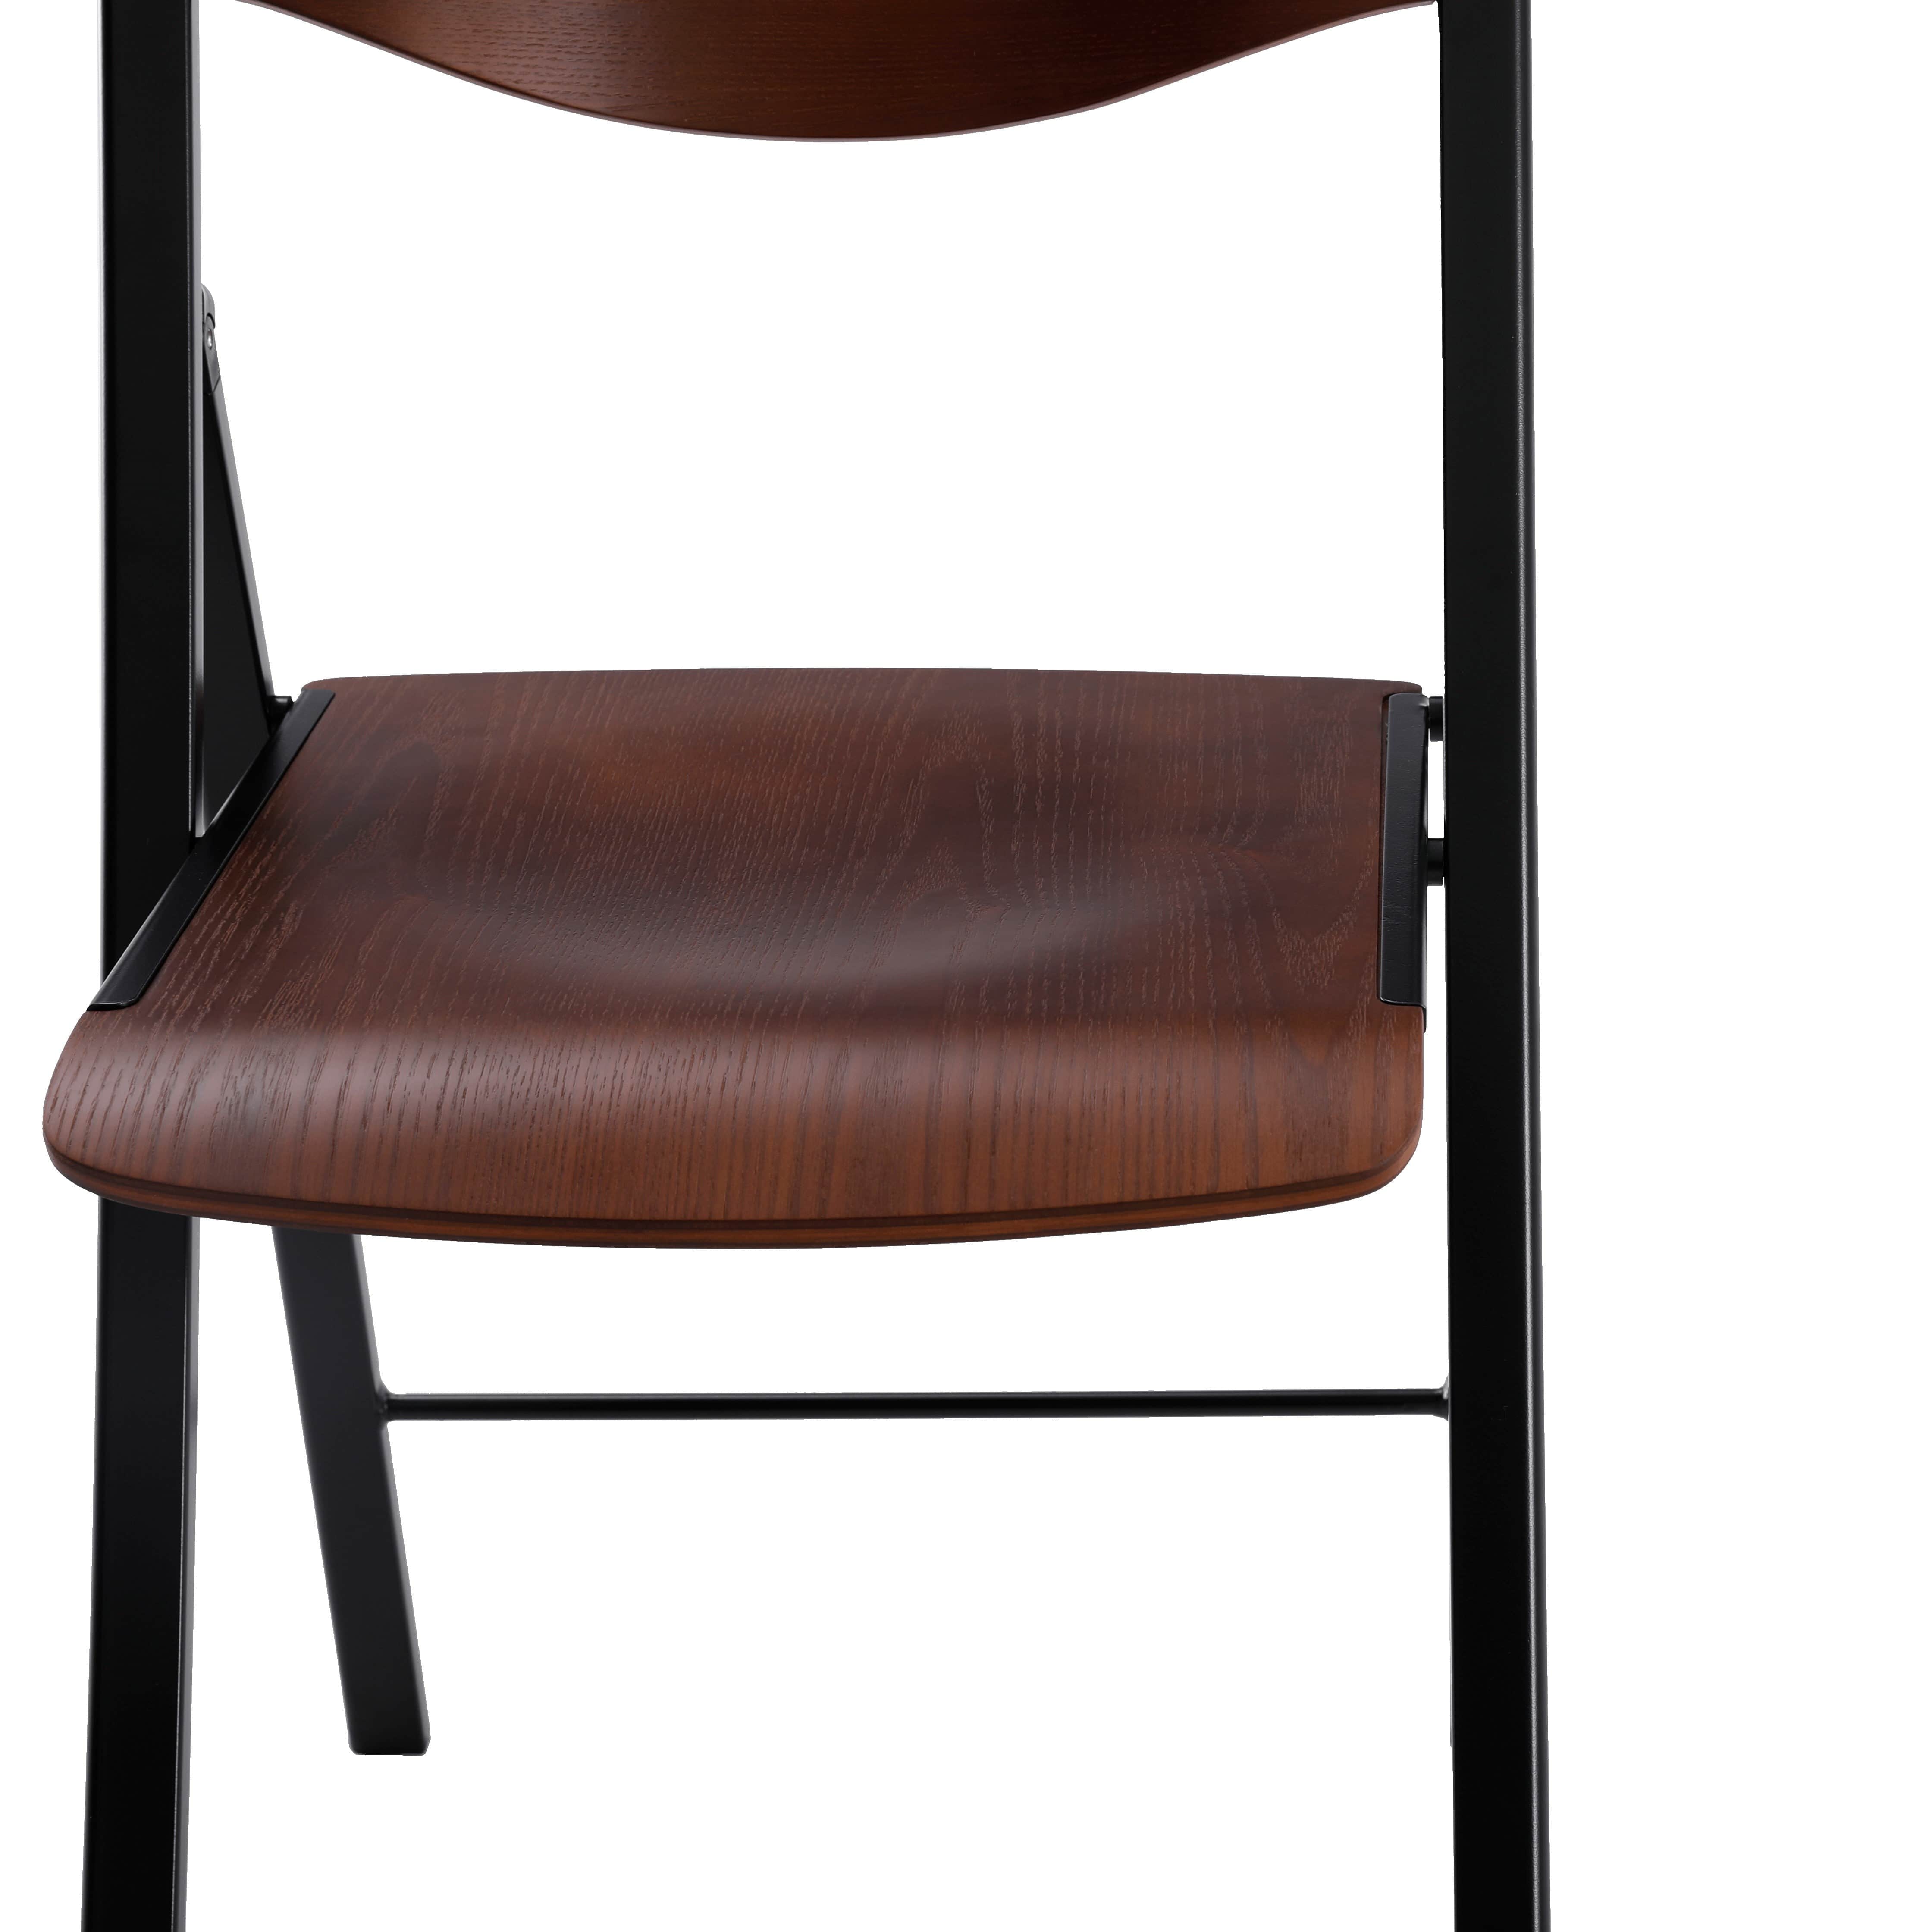 Foldees Boston model designer folding chair, grey metal frame, wallnut color solid wood seat, matching wallnut wood stylish rounded backrest,  designer folding chair כסא מתקפל מעוצב מסגרת צבע אפור ומושב עץ וגב עץ מעוגל בגוון אגוז